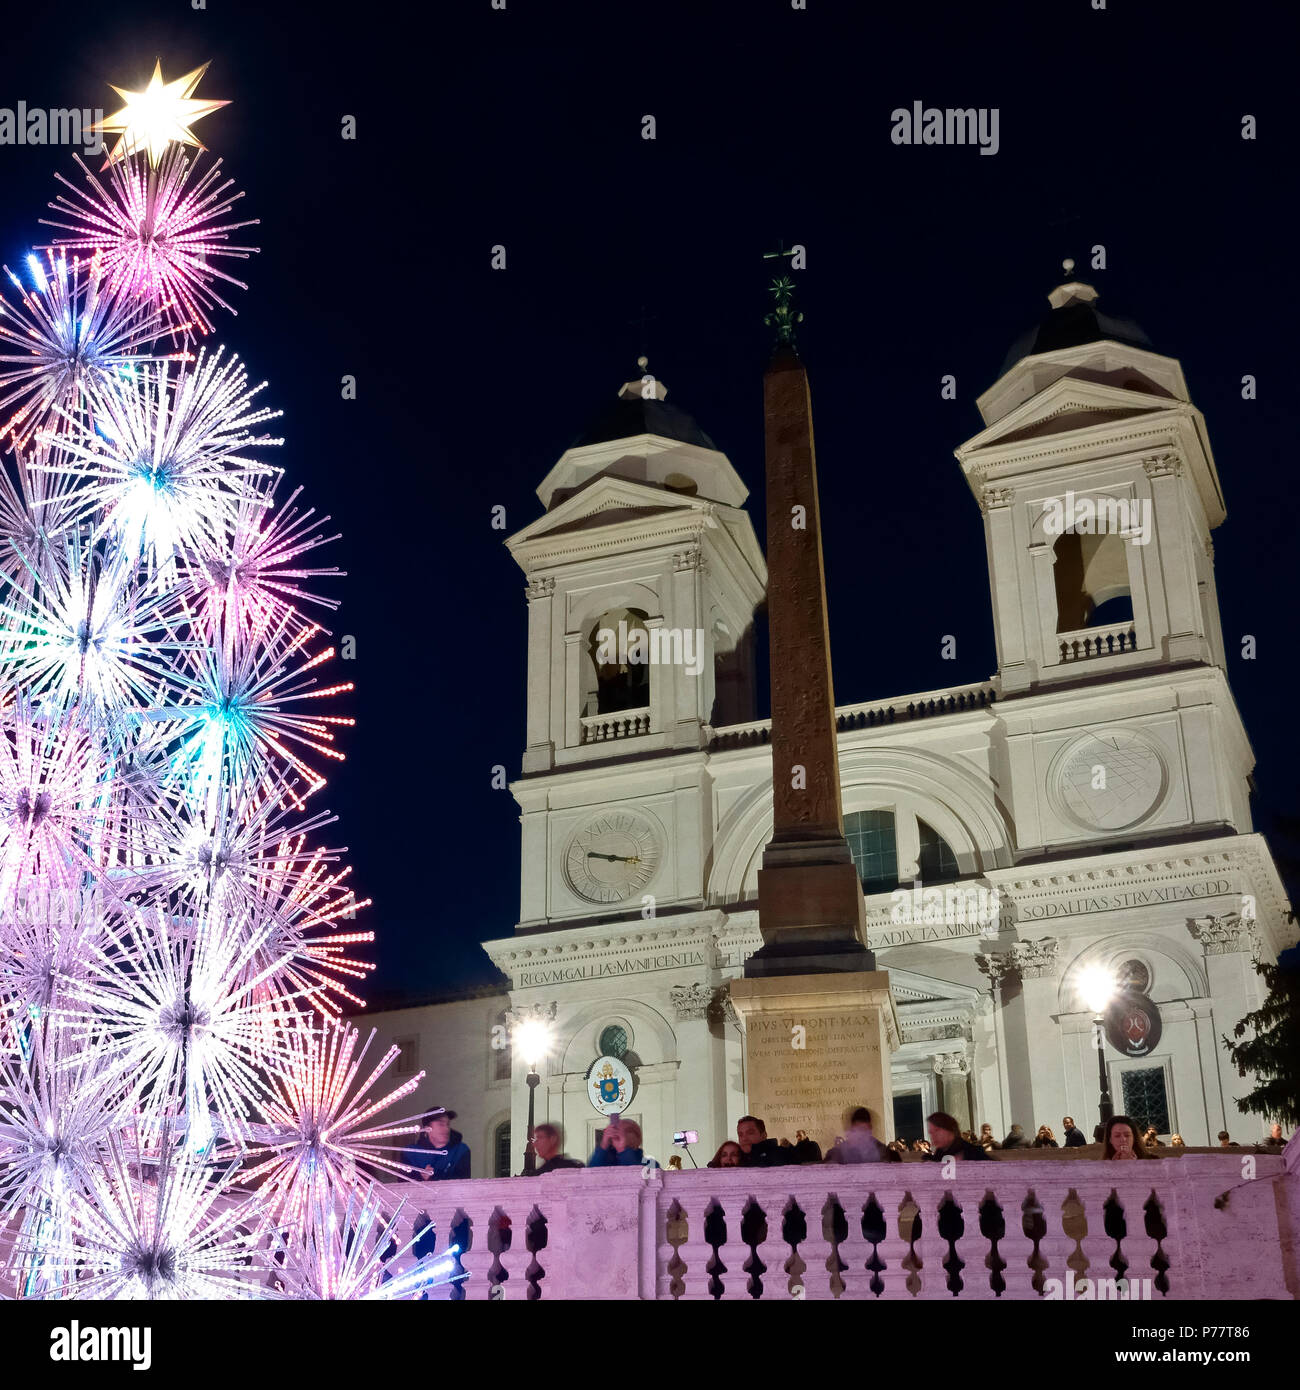 Weihnachtsbaum, auf der Spanischen Treppe, Trinità dei Monti, Piazza di Spagna. Weihnachtszeit, Wintersaison. Rom, Italien, Europa, EU. Nahaufnahme. Stockfoto